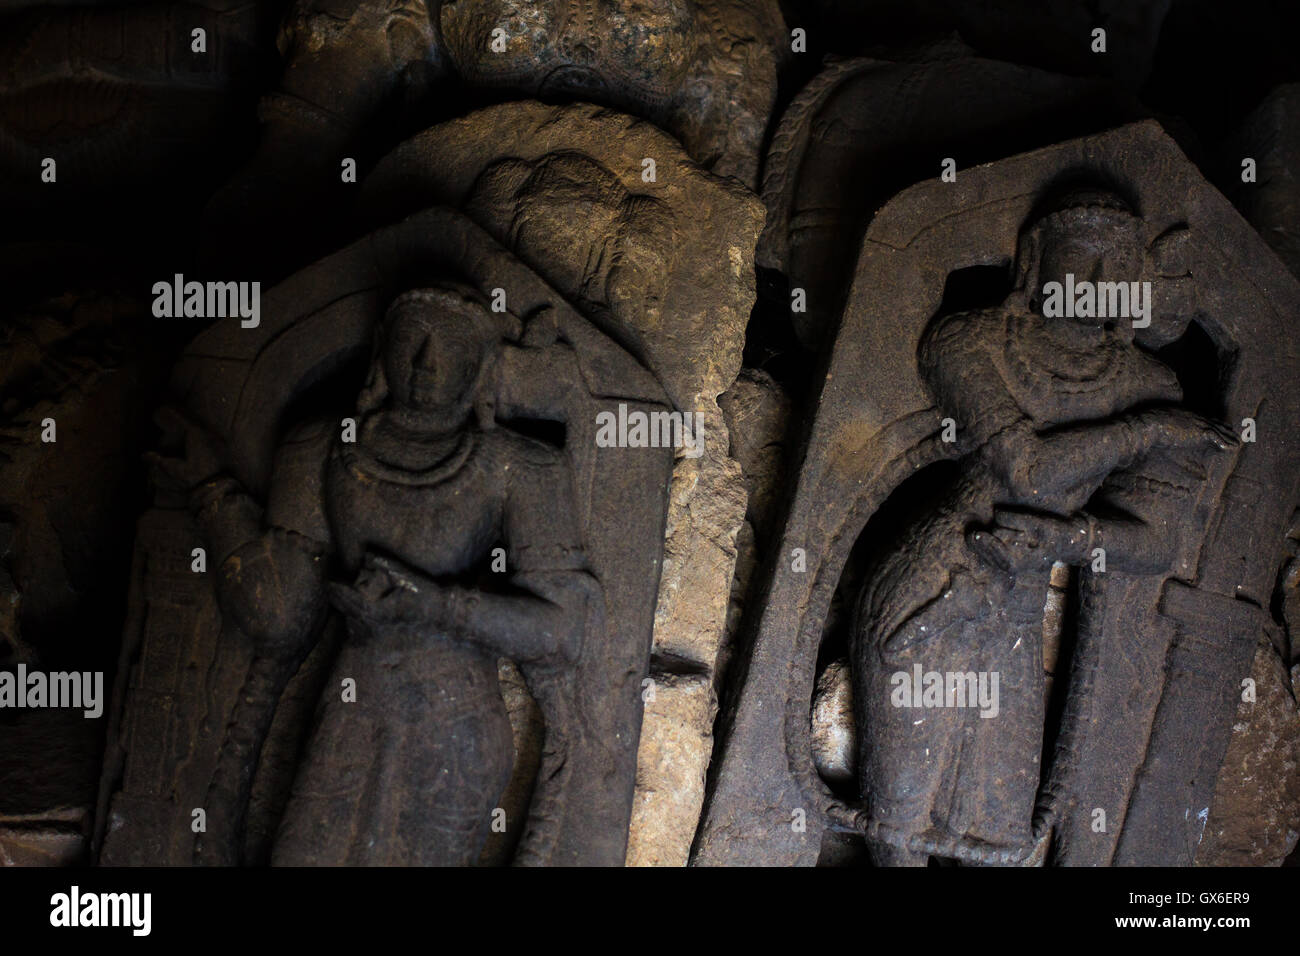 Deity sculpture in the Chennakesava temple at Somanathapura, Karnataka,India, Asia. Stock Photo